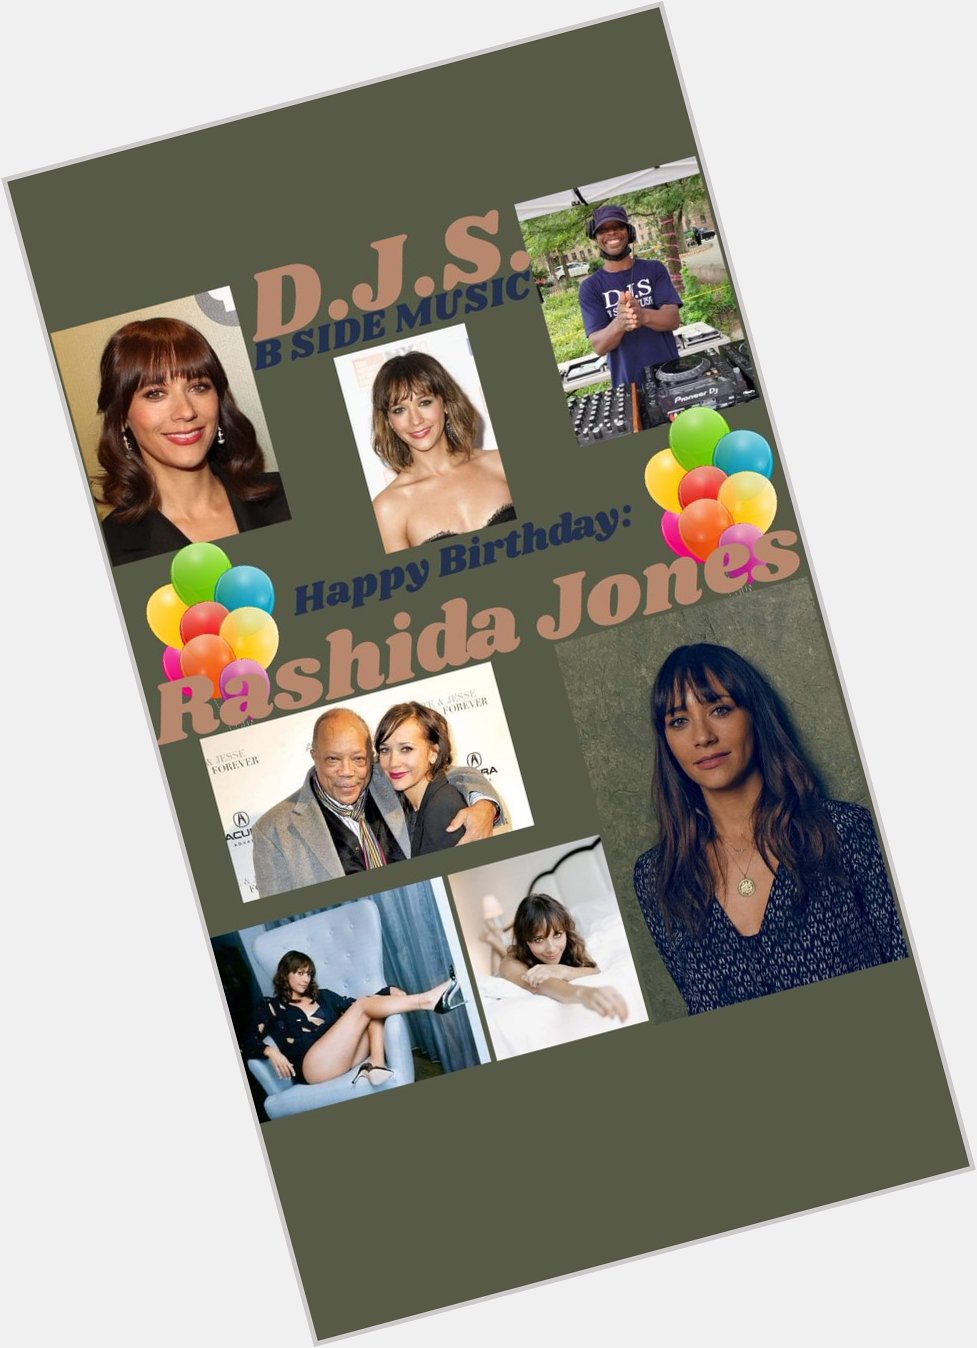 I(D.J.S.)\"B SIDE MUSIC\" wish Actress \"RASHIDA JONES\" Happy Birthday!!! 